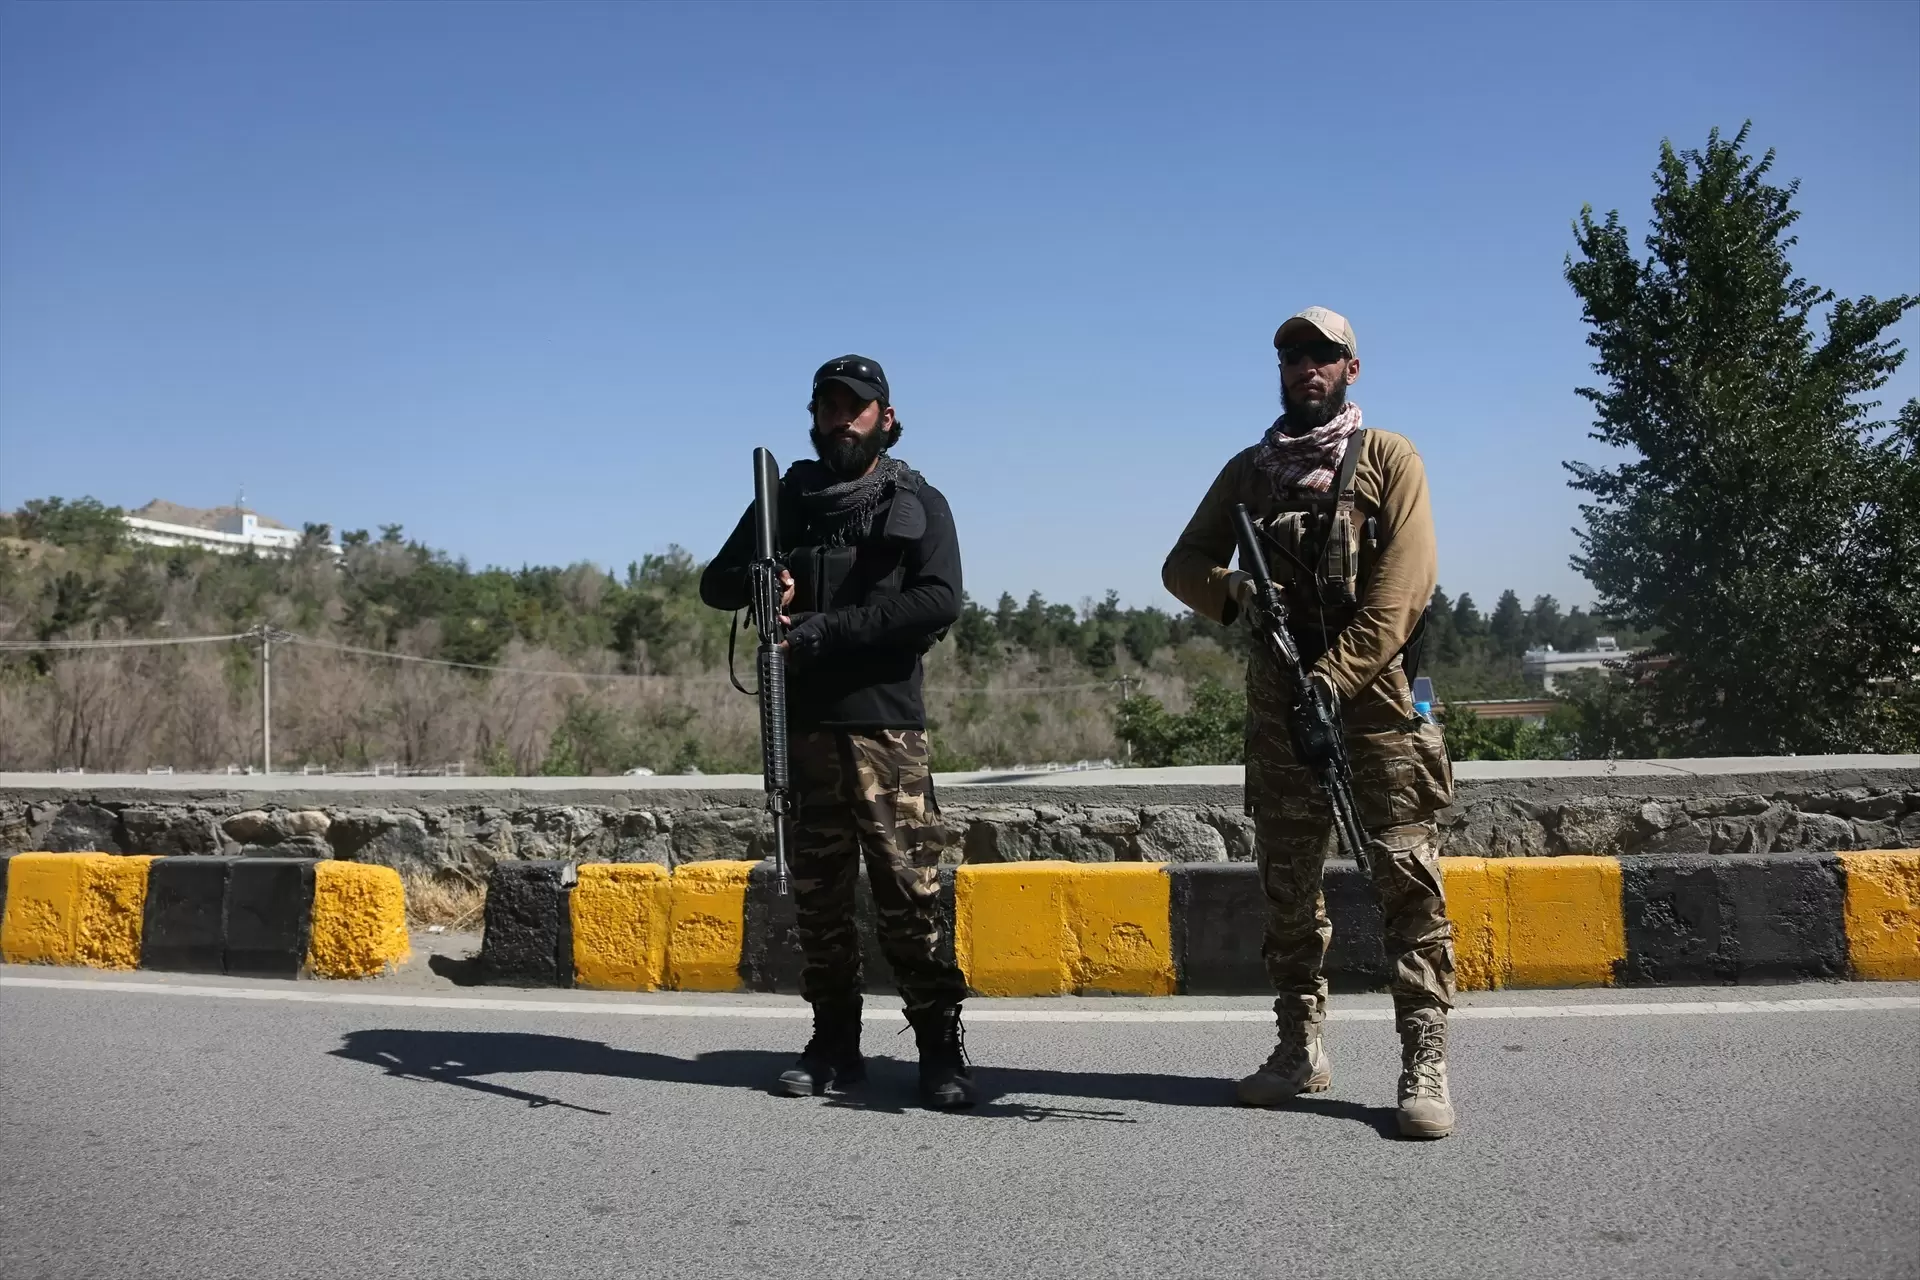 Miembros armados de los talibán en Afganistán en un imagen de archivo. — Saifurahman Safi / EUROPA PRESS